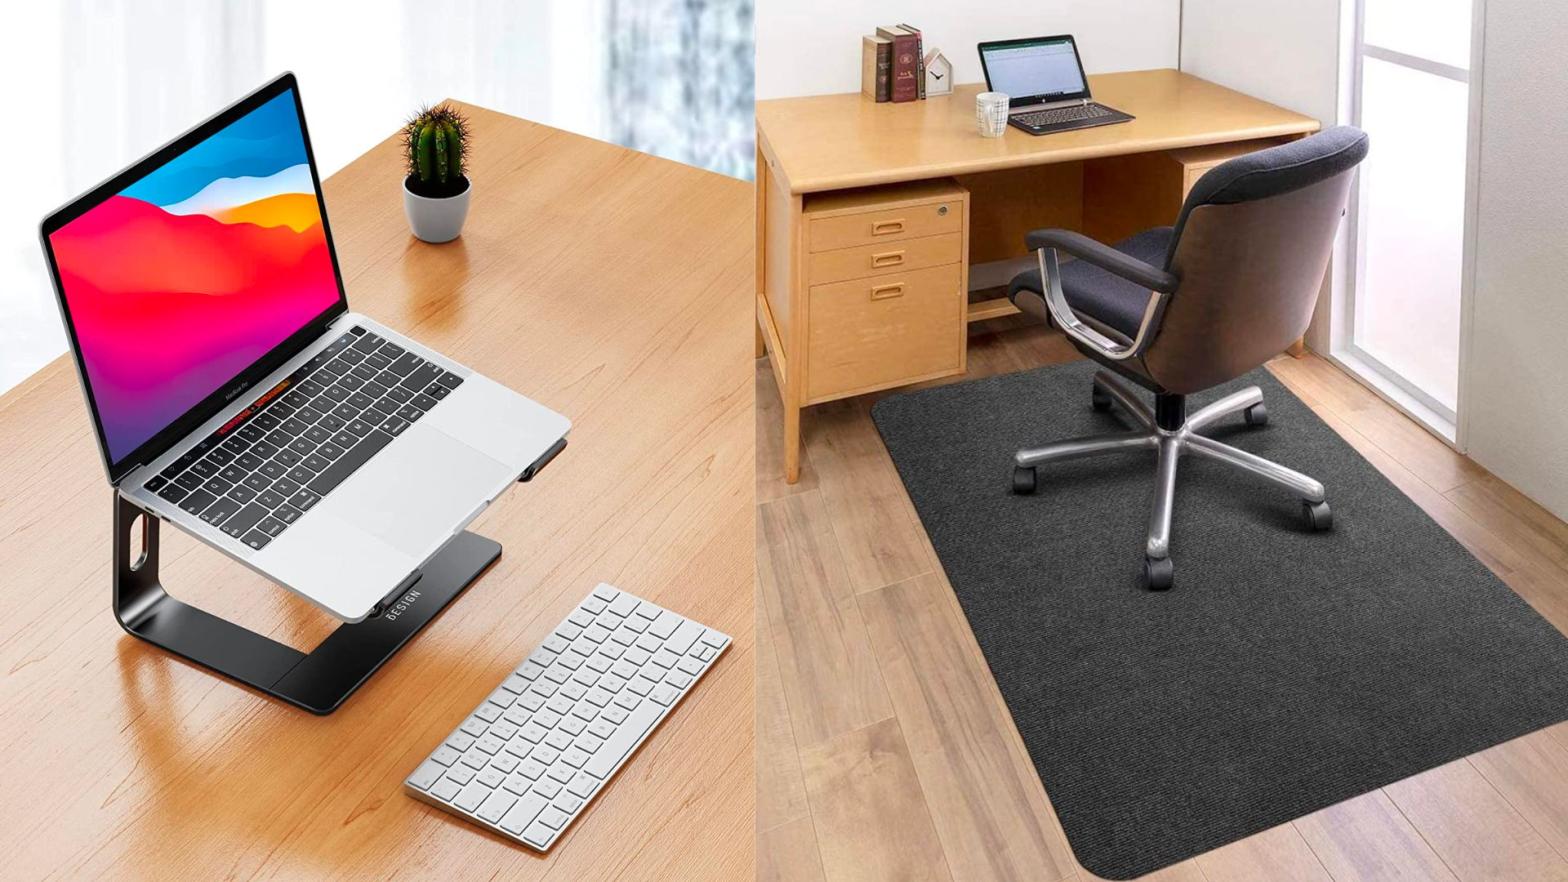 non-tech desk accessories for home office